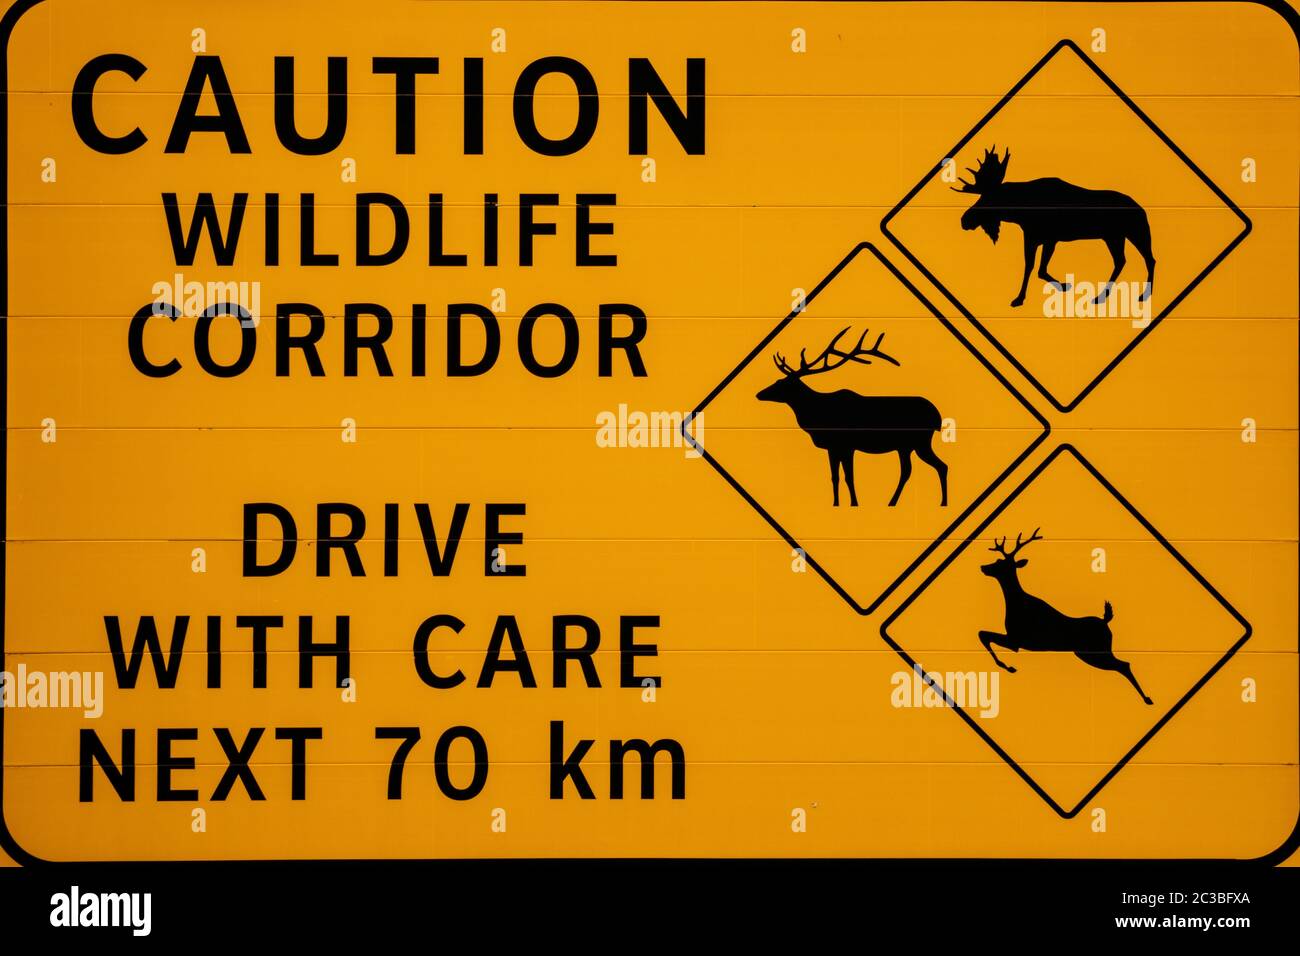 https://c8.alamy.com/comp/2C3BFXA/warning-sign-of-wildlife-in-canada-2C3BFXA.jpg